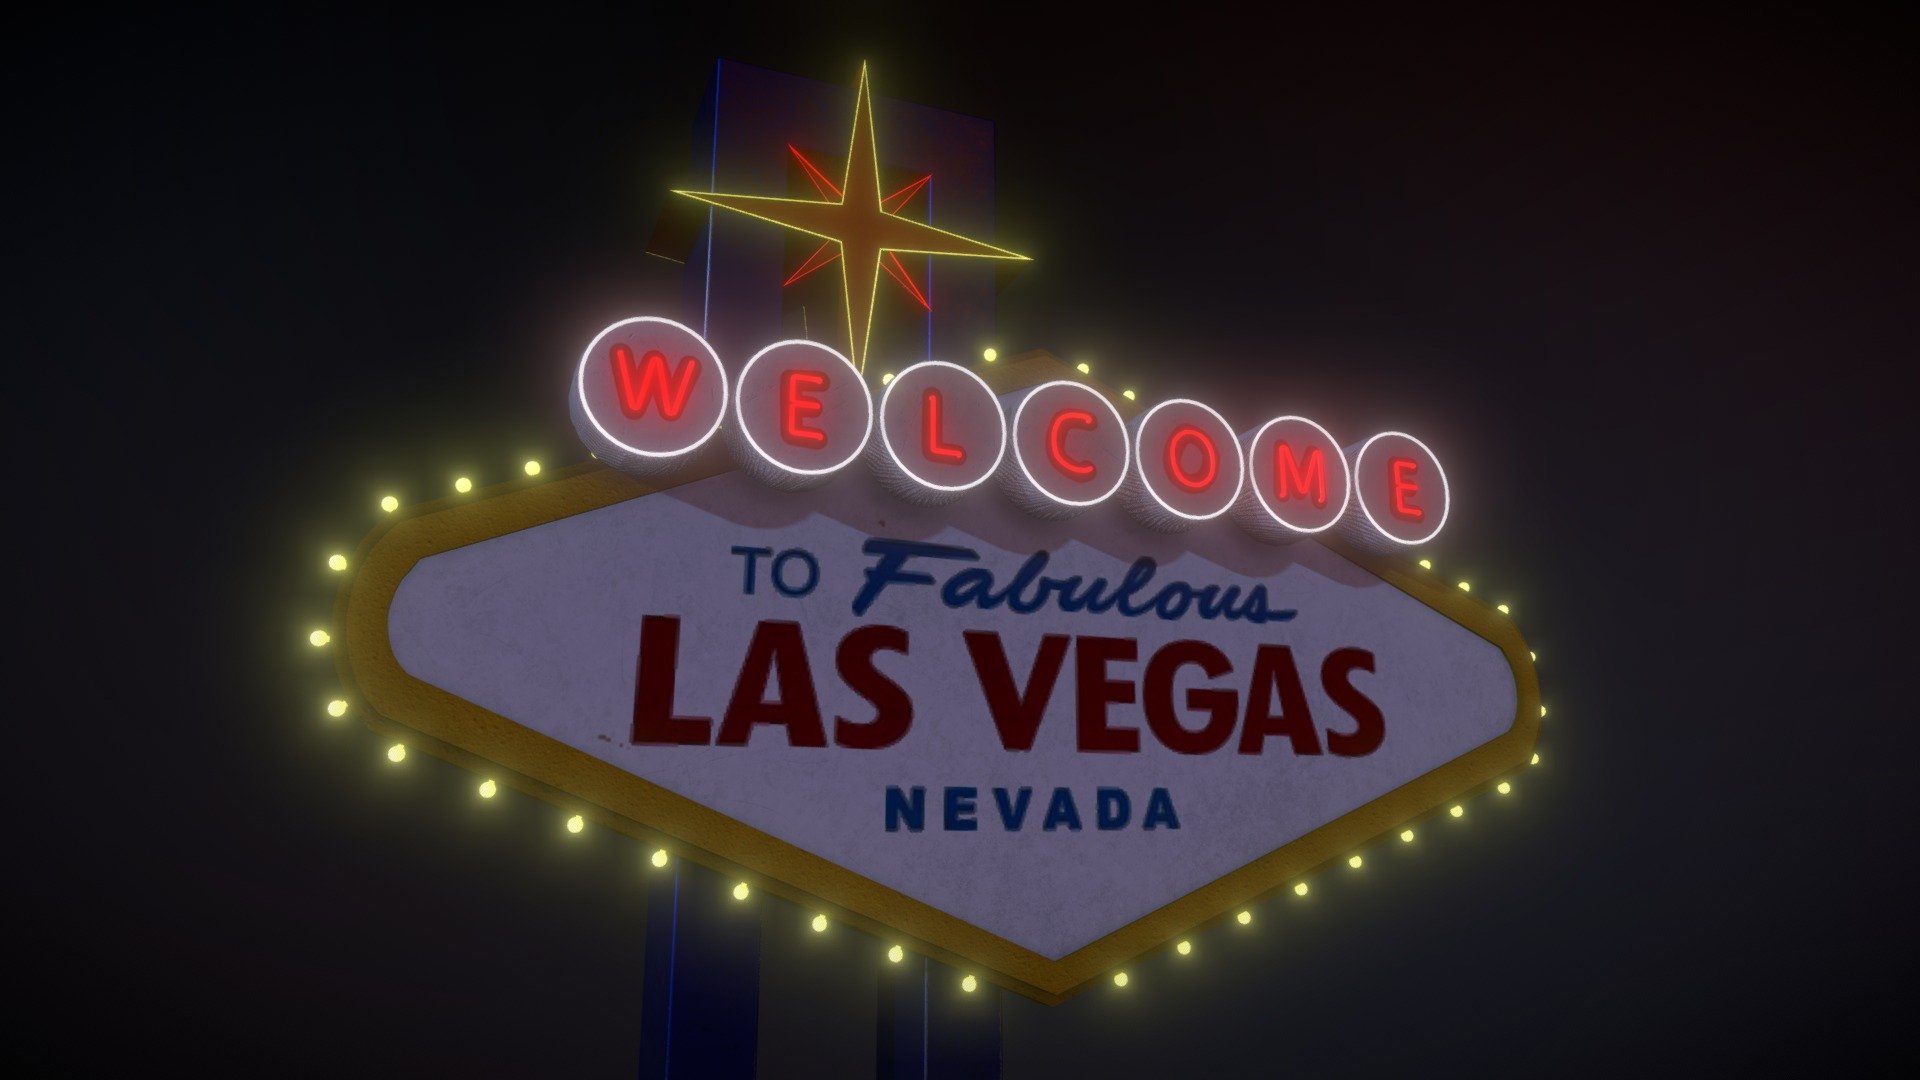 uma placa de Las Vegas usando o sistema de emissão para testa as luzes

a Las Vegas sign using the emission system to test the lights - Welcome to Las Vegas sign - Buy Royalty Free 3D model by Haxis 3d model